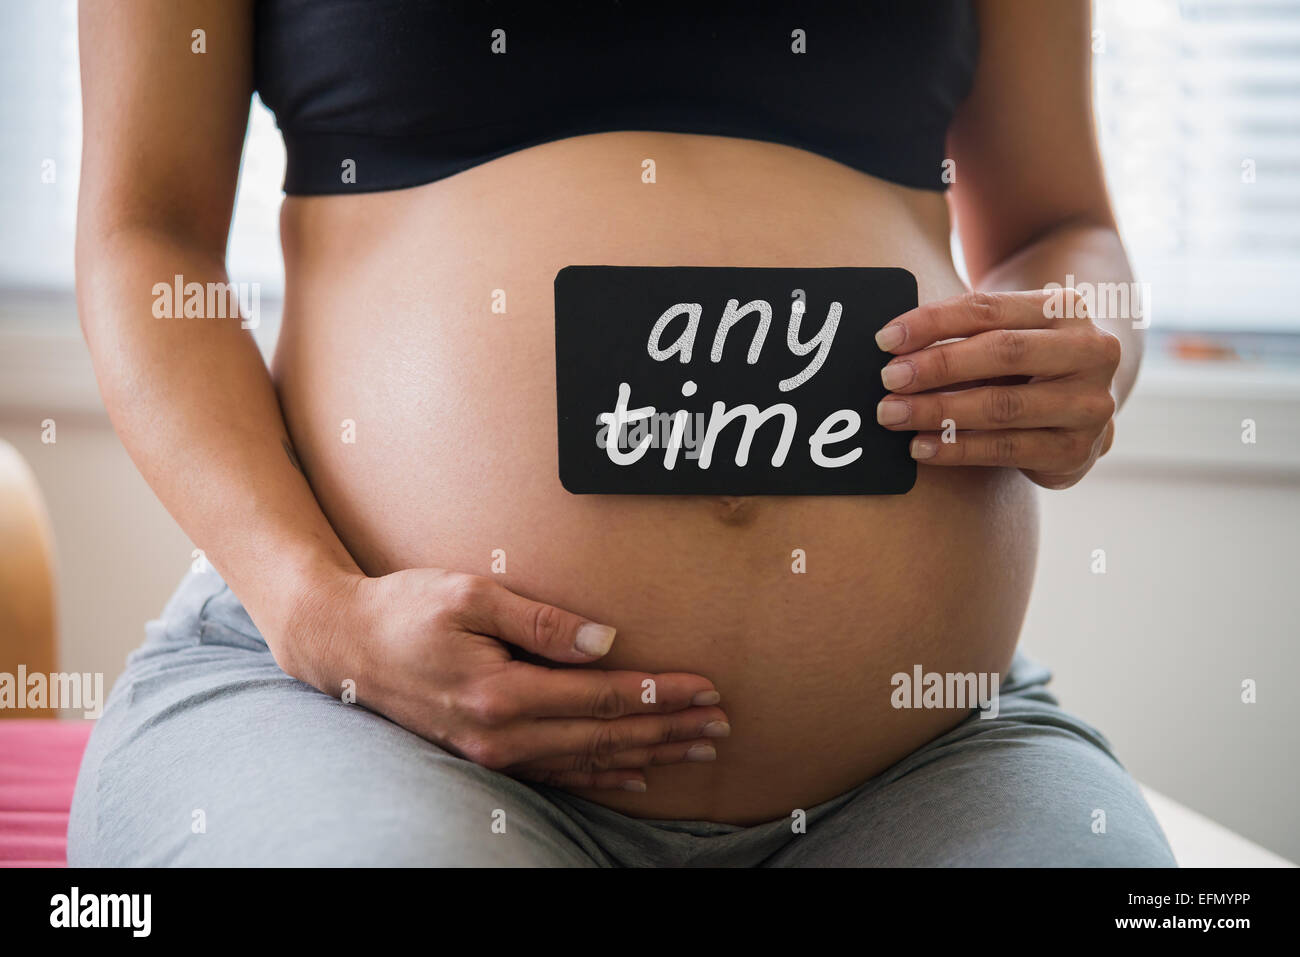 Baby bump, image de 8 mois femme enceinte avec un panneau sur son ventre Banque D'Images